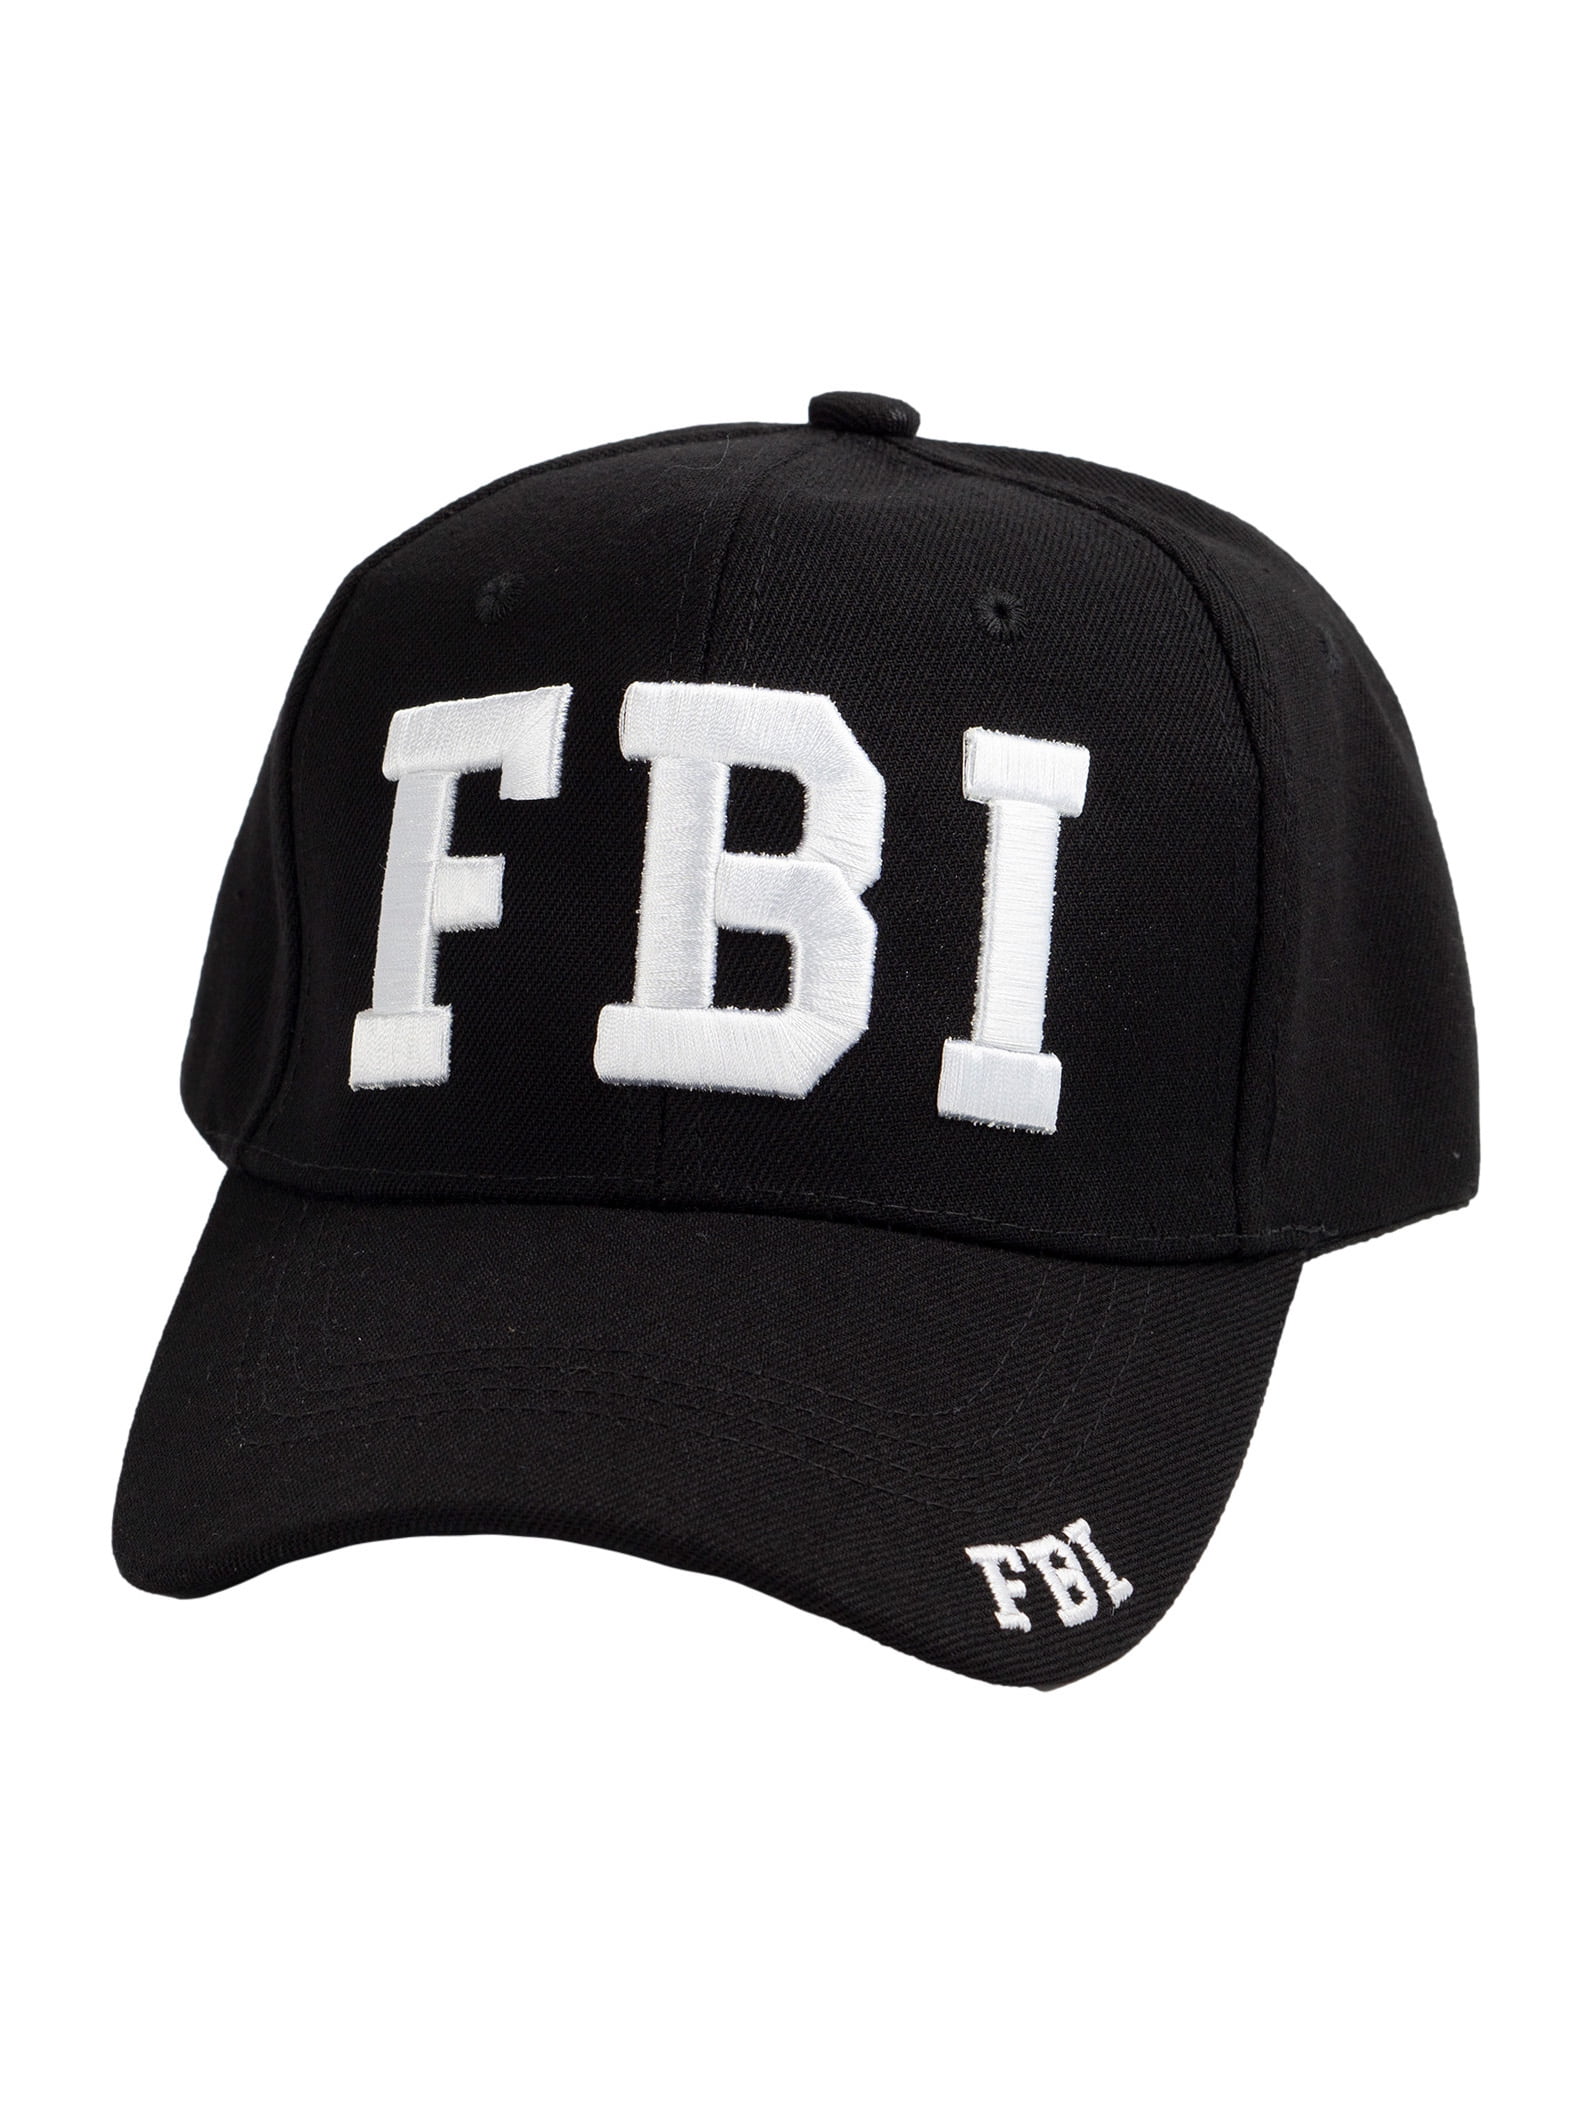 FBI HAT CAP ENFORCEMENT HATS - Walmart.com